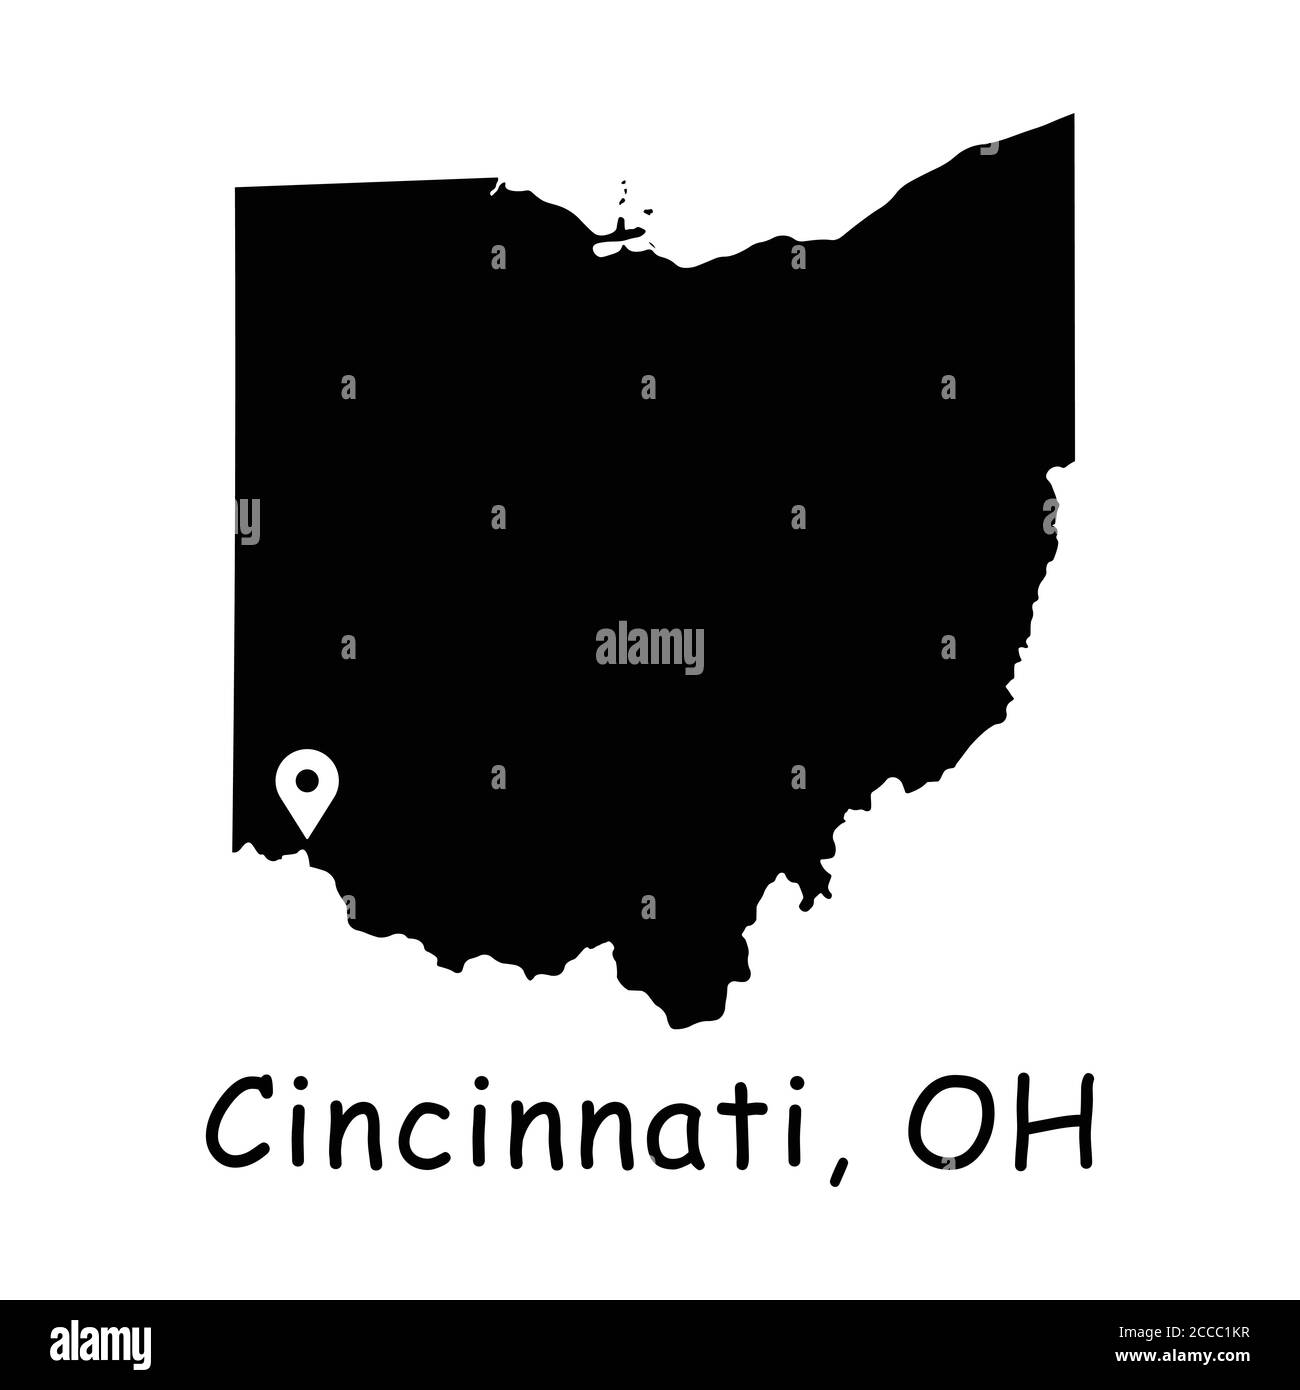 Cincinnati sulla mappa dello stato dell'Ohio. Mappa dettagliata dello stato dell'OH con pin sulla città di Cincinnati. Mappa vettoriale silhouette nera isolata su sfondo bianco. Illustrazione Vettoriale